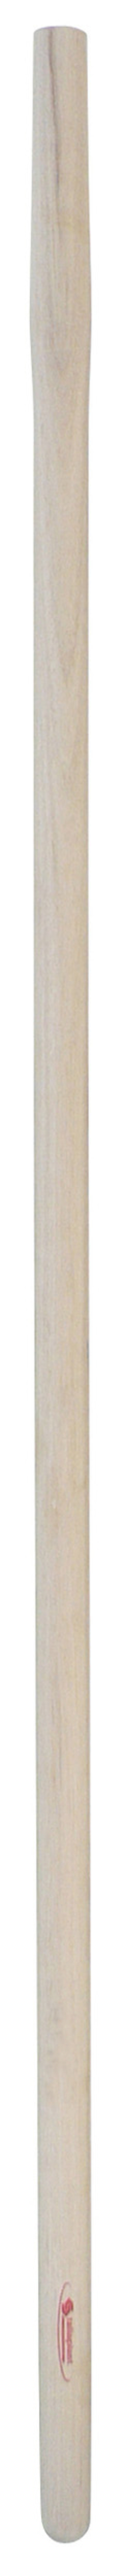 Manche de pelle bois 150cm TALIAPLAST - 470205